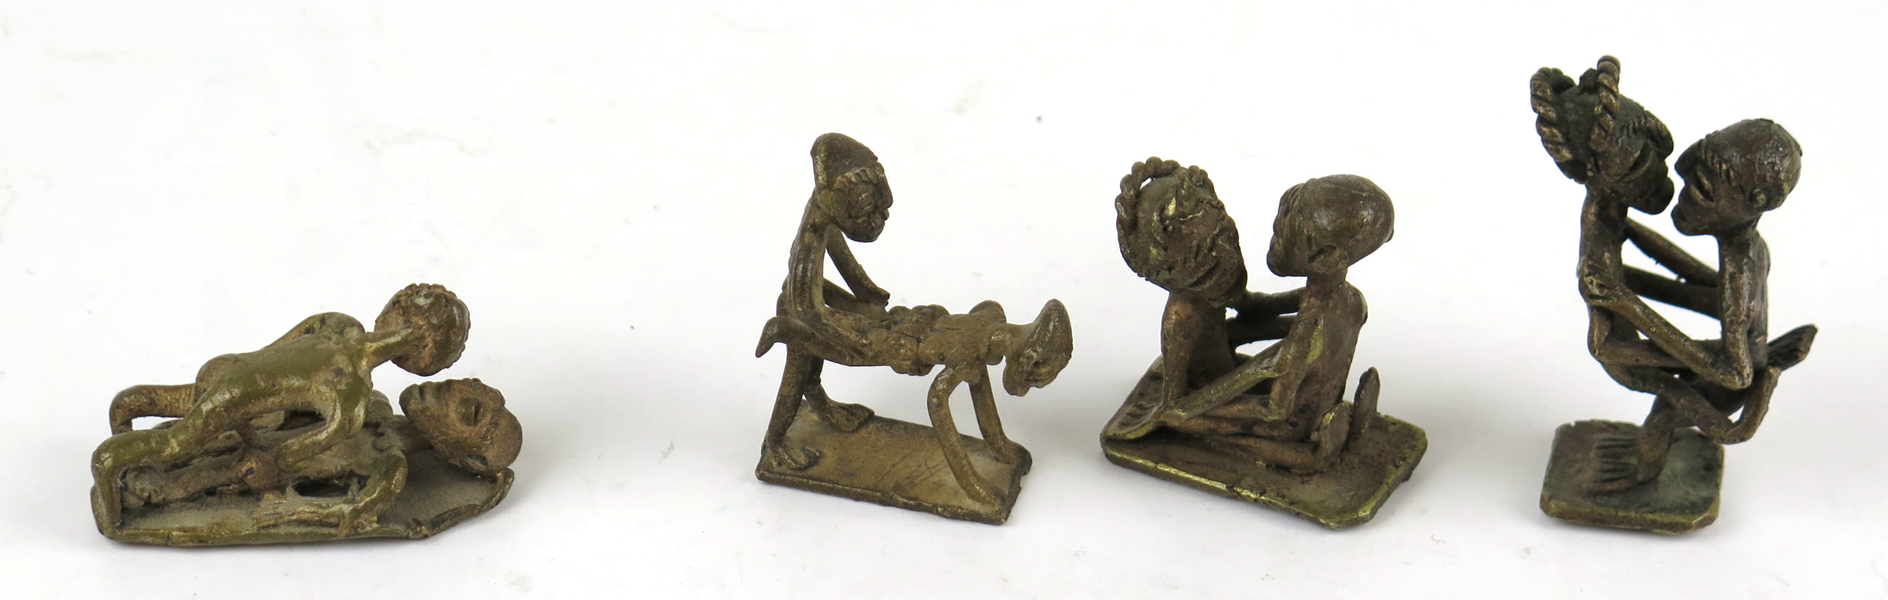 Skulpturer, 4 st, brons, cire-perdueteknik, Västafrika 1900-talets 2 hälft, _15473a_lg.jpeg